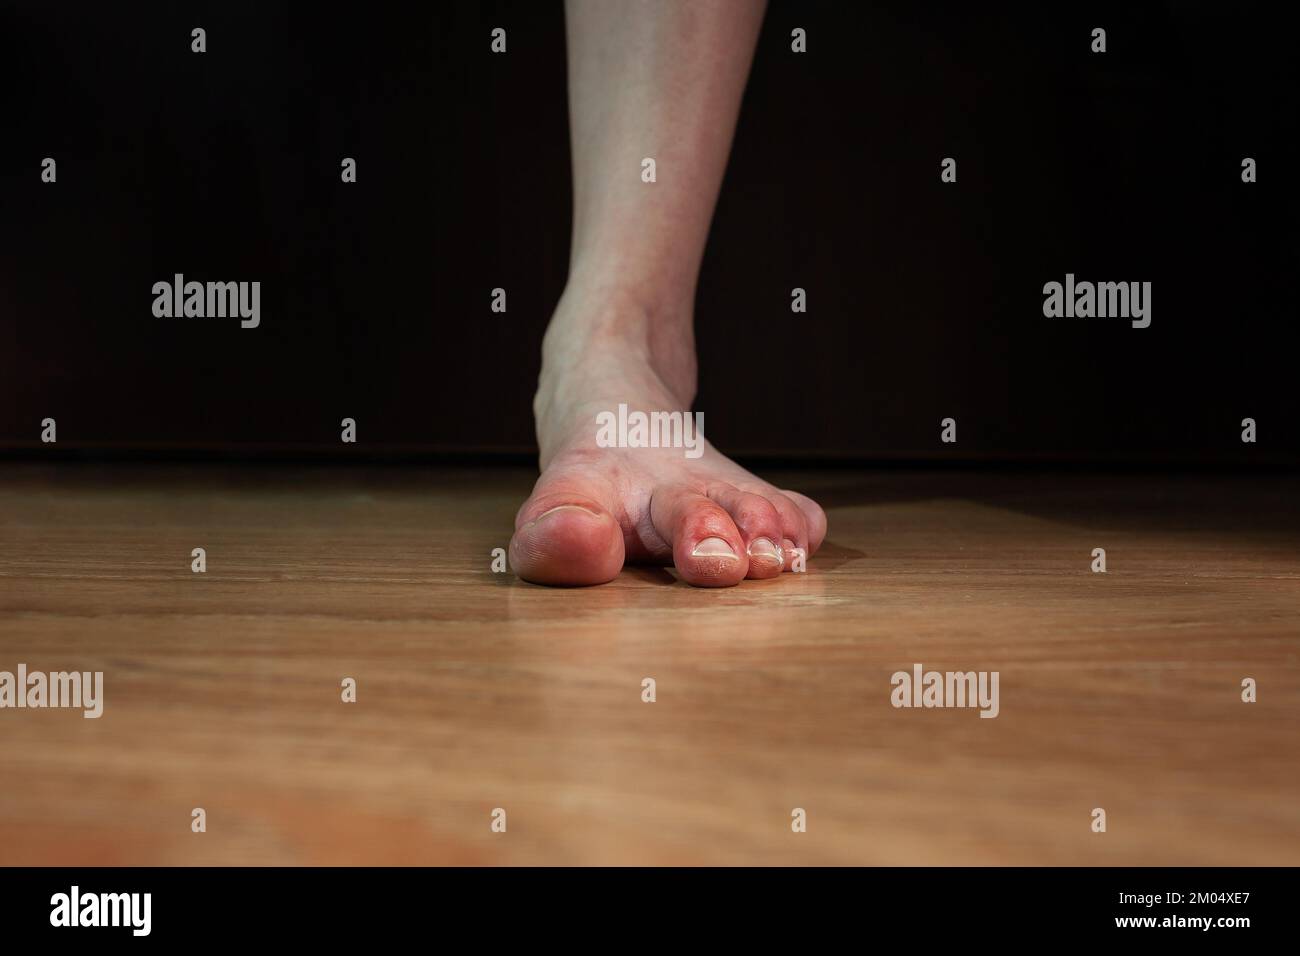 Fuß einer Person mit Raynaud-Phänomen und flacher Fuß, mit Kaltblüten und rot geschwollenen Zehen, sehr trockene, beschädigte Haut flacher Fuß auf dunklem Hintergrund Stockfoto